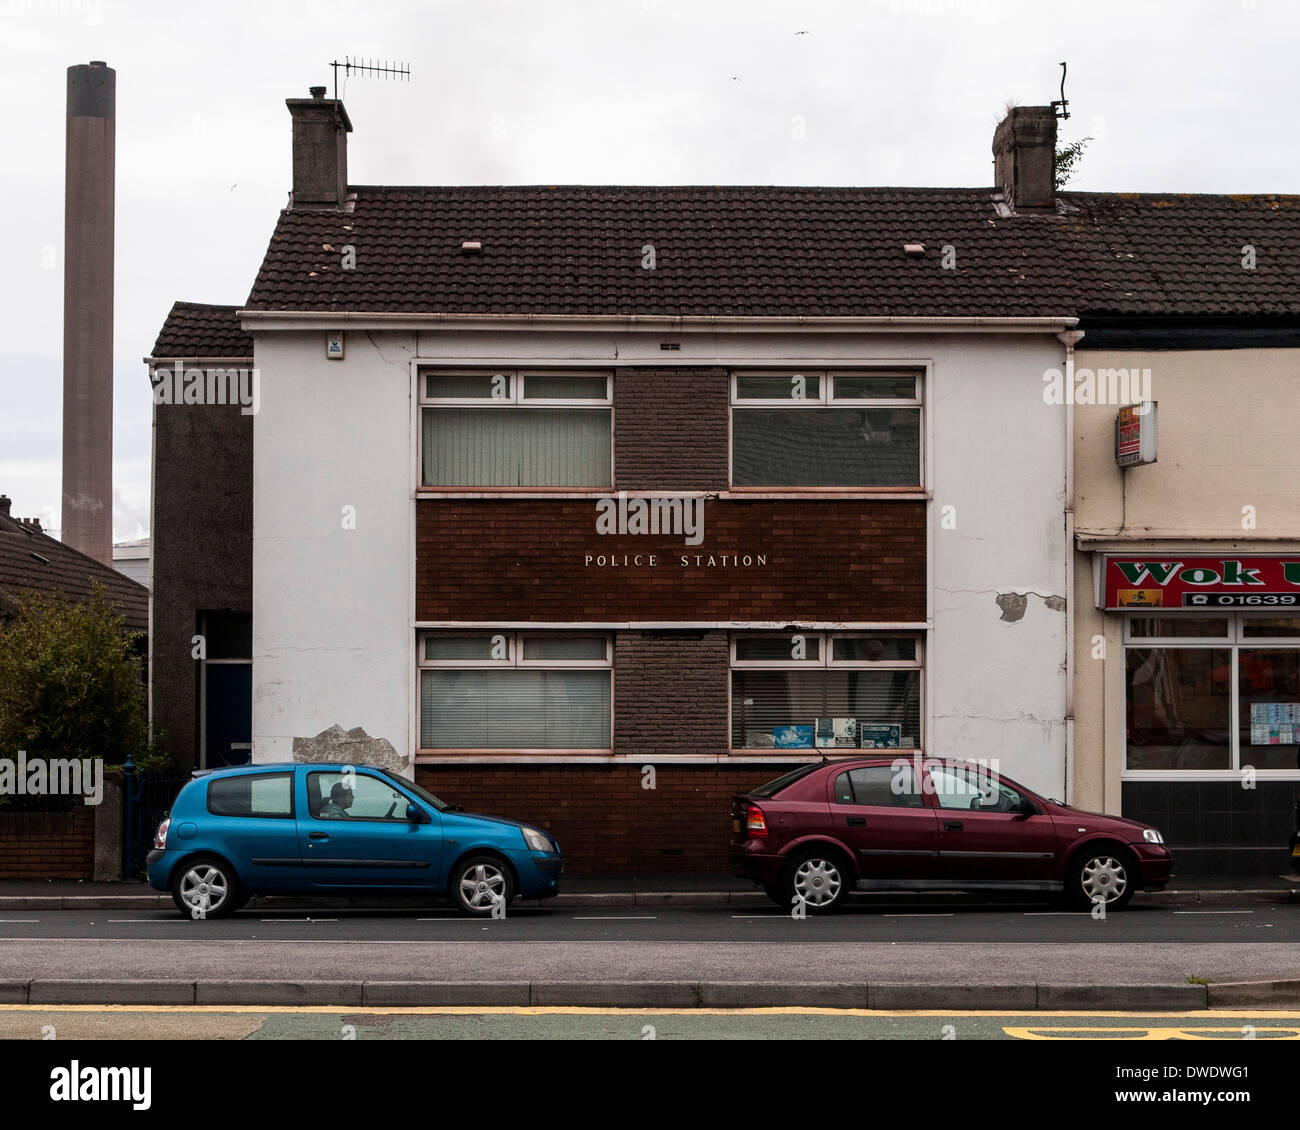 Port Talbot, Port Talbot, Vereinigtes Königreich. Architekt: Verschiedene, 2014. Polizei-Station. Stockfoto